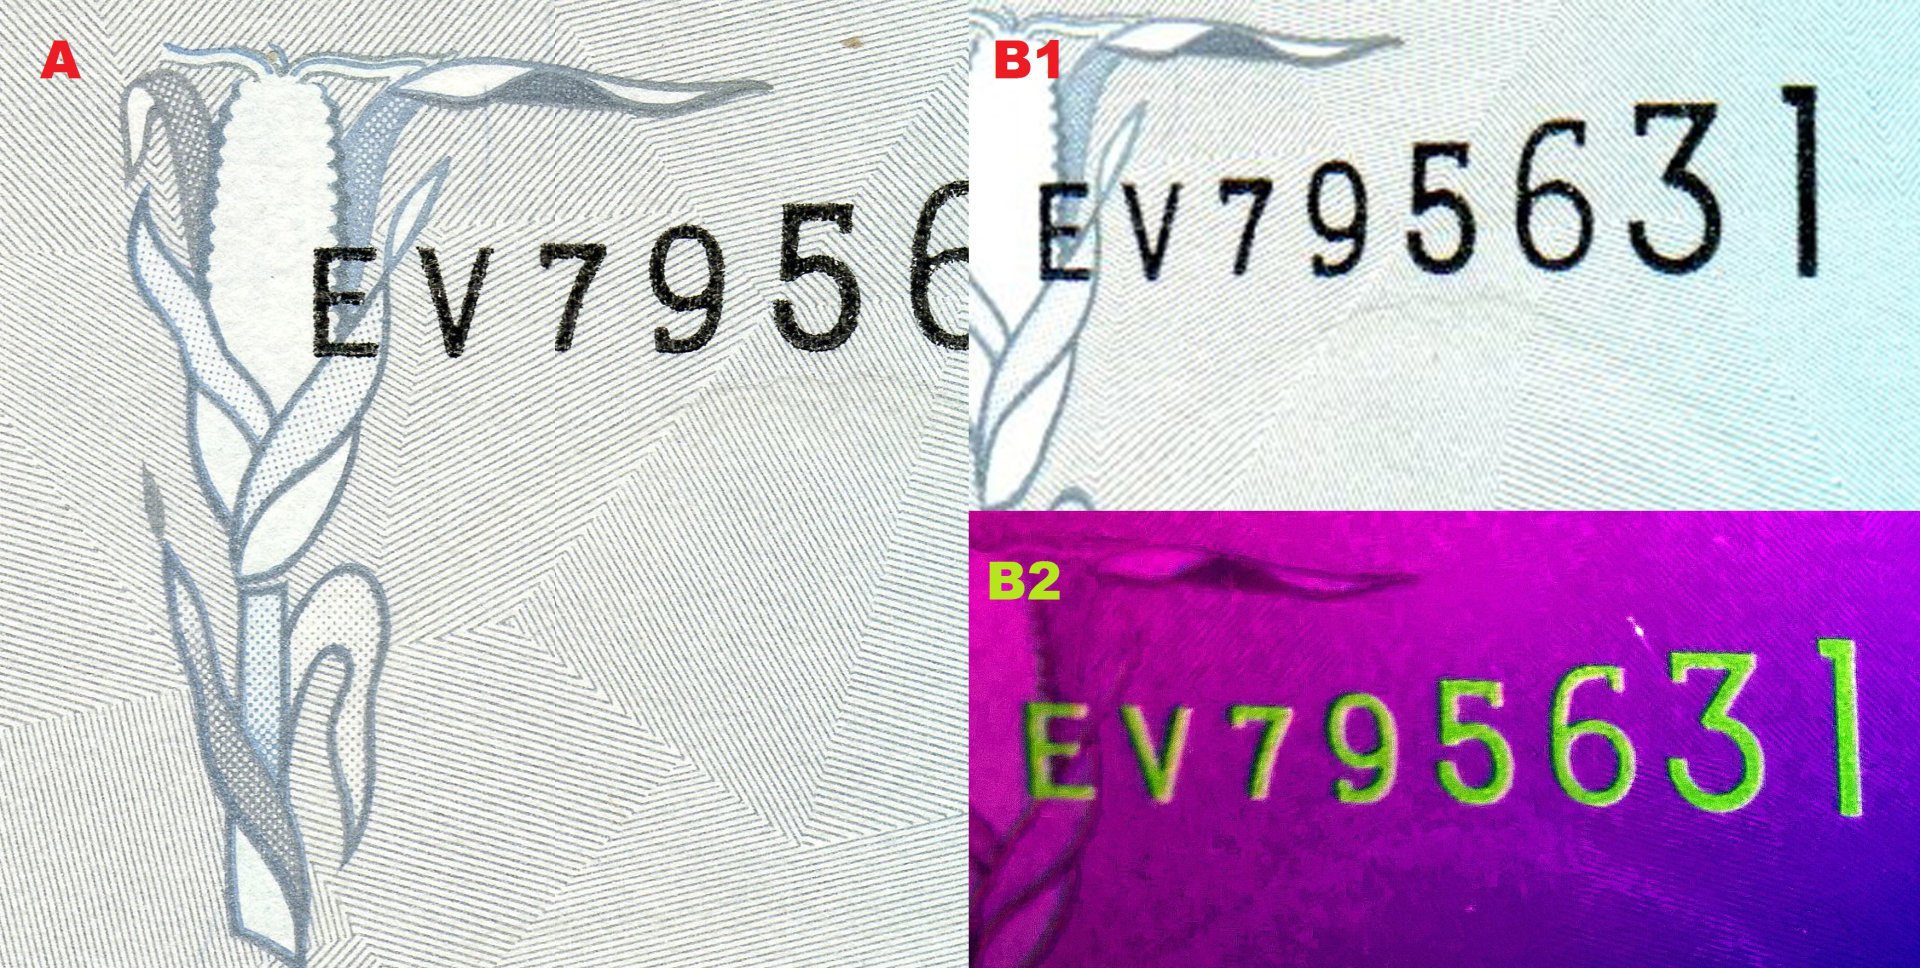 Obr. 1. A) Soutisková značka v podobě klasu kukuřice, v podkladu patrné kárování. B1) Ascendentní sériové číslo. B2) Totéž číslo pod UV nasvícením.